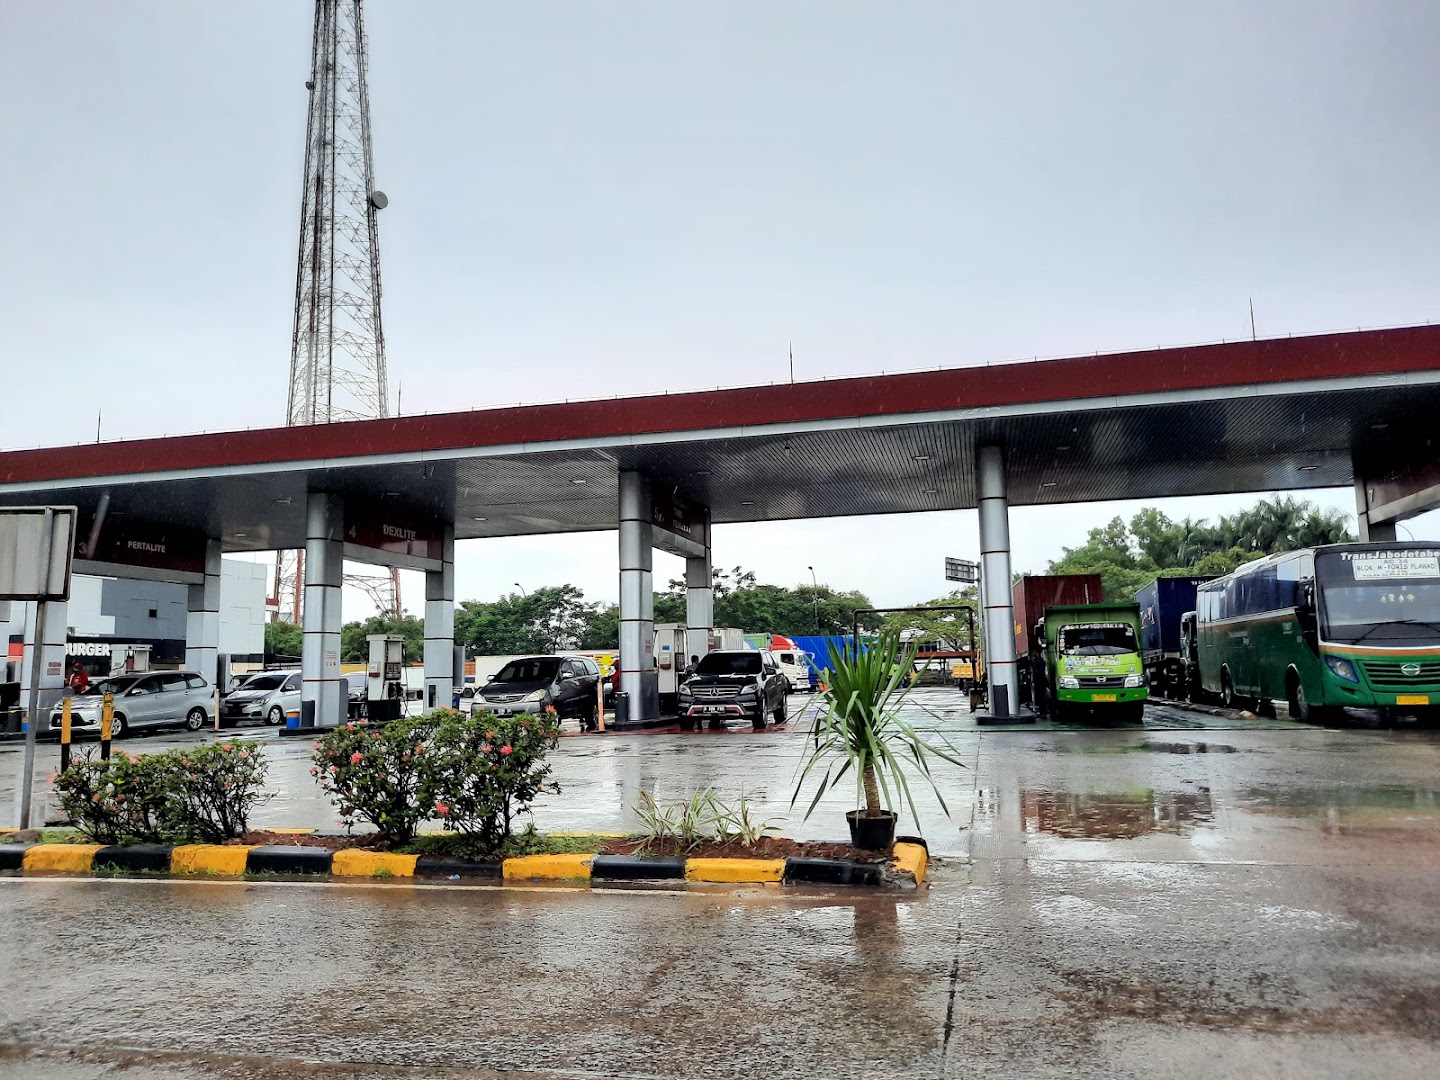 Gambar Gas Station Rest Area Km 13 A Jakarta Tangerang